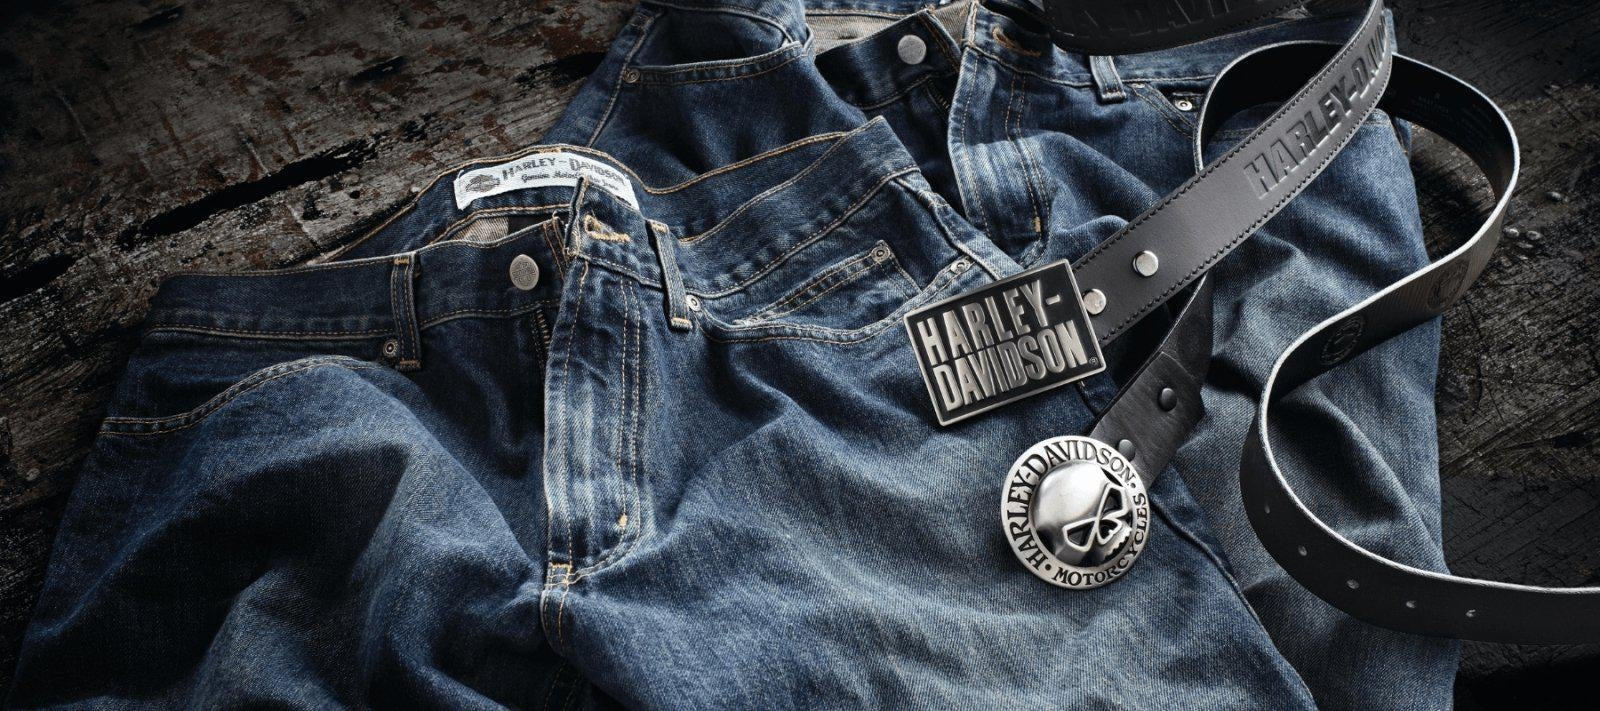 Harley Davidson Belt  Harley davidson accessories, Harley davidson belts,  Harley davidson clothing